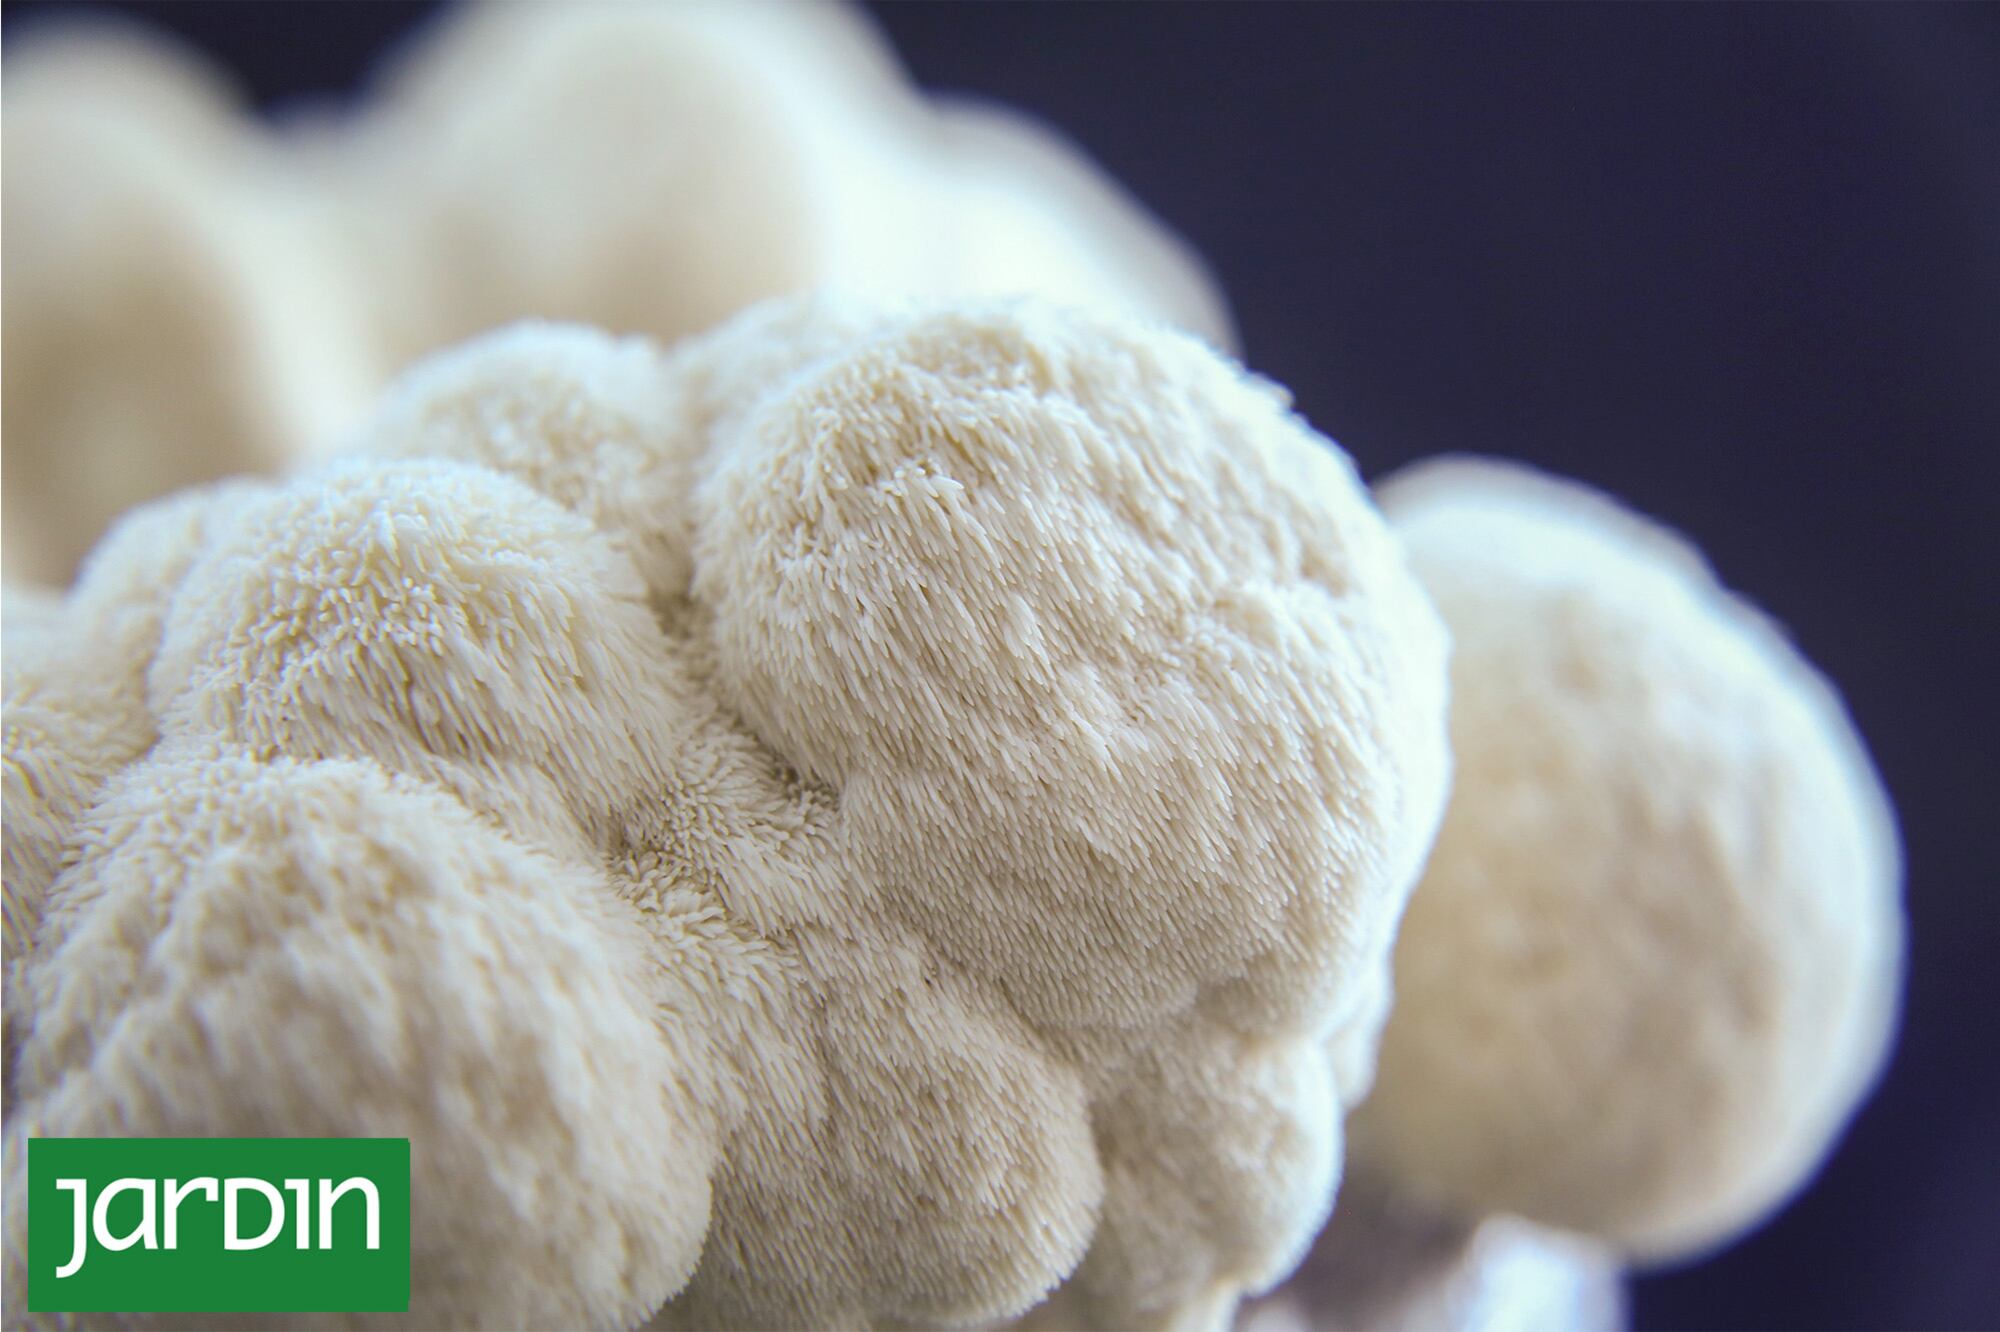 Melena de león: el poderoso hongo que controla el colesterol y disminuye el riesgo cardiovascular